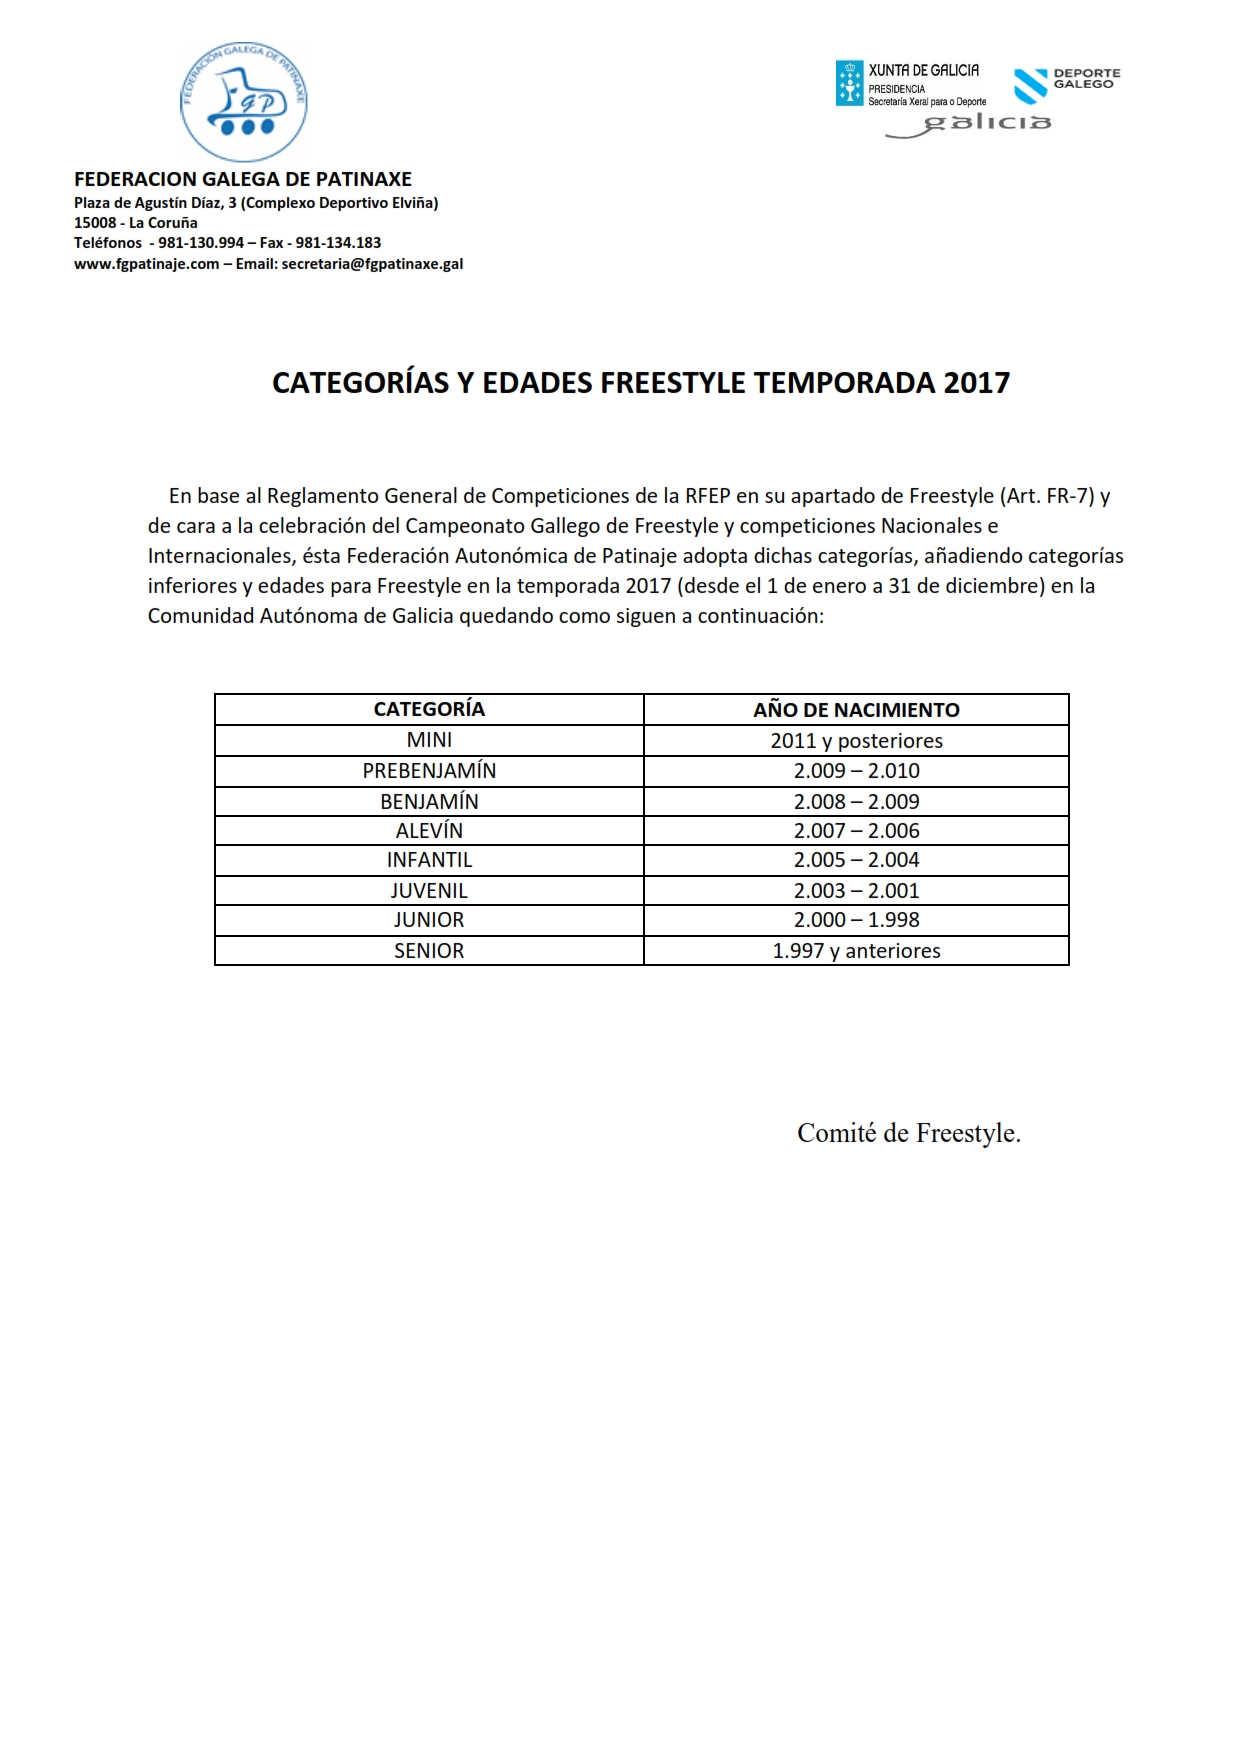 Categorías Freestyle Temporada 2017_001